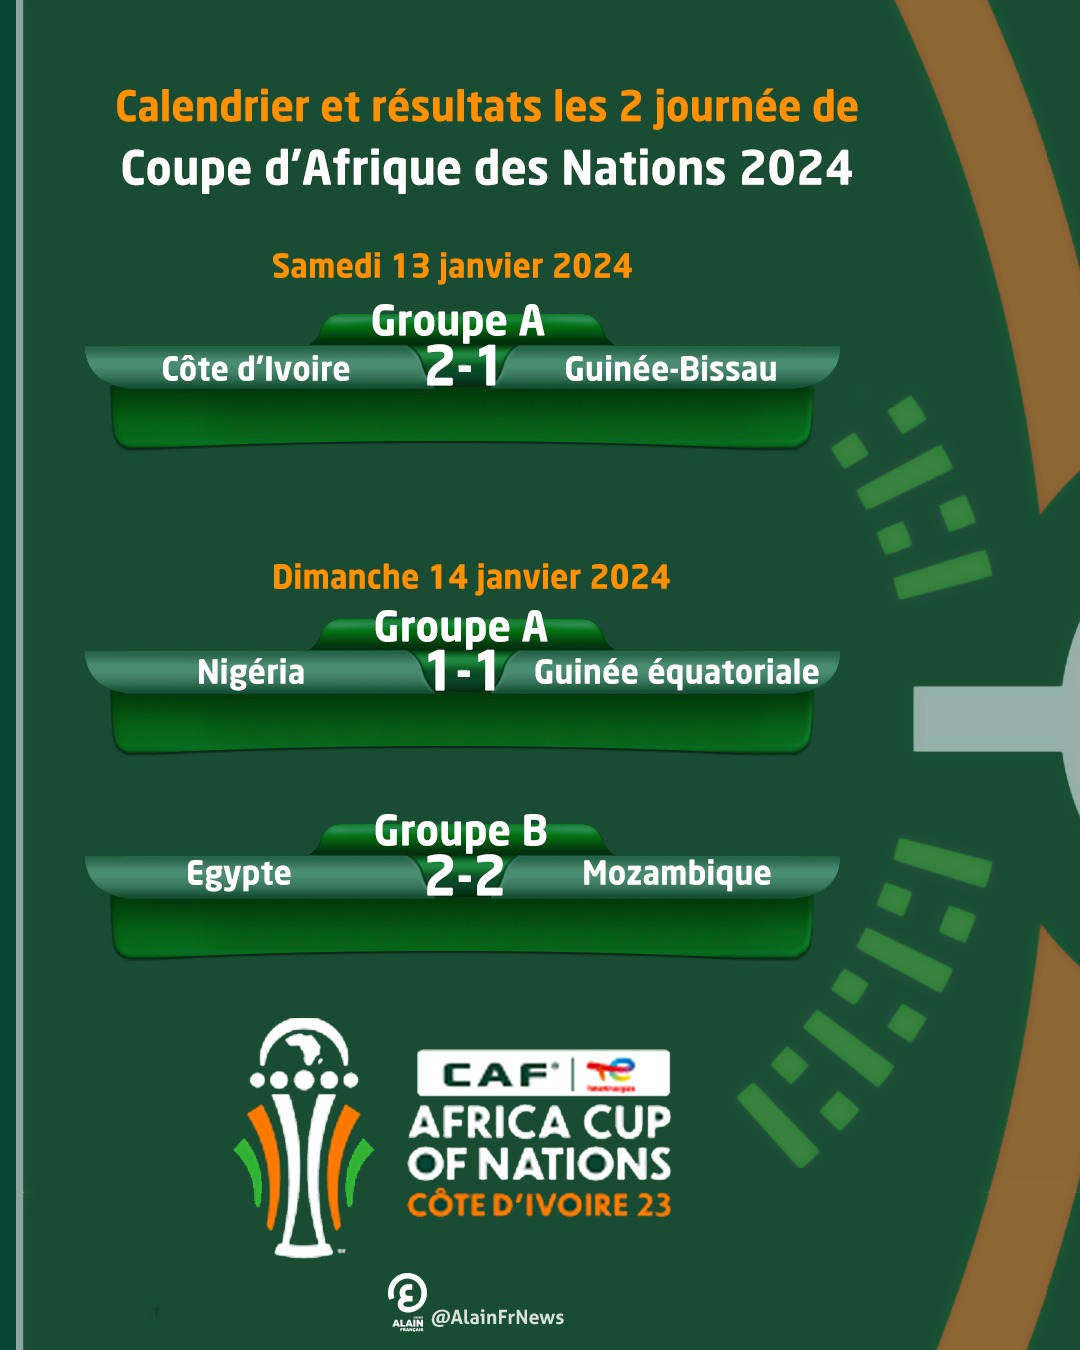 CAN 2024 - Calendrier et résultats - France 24